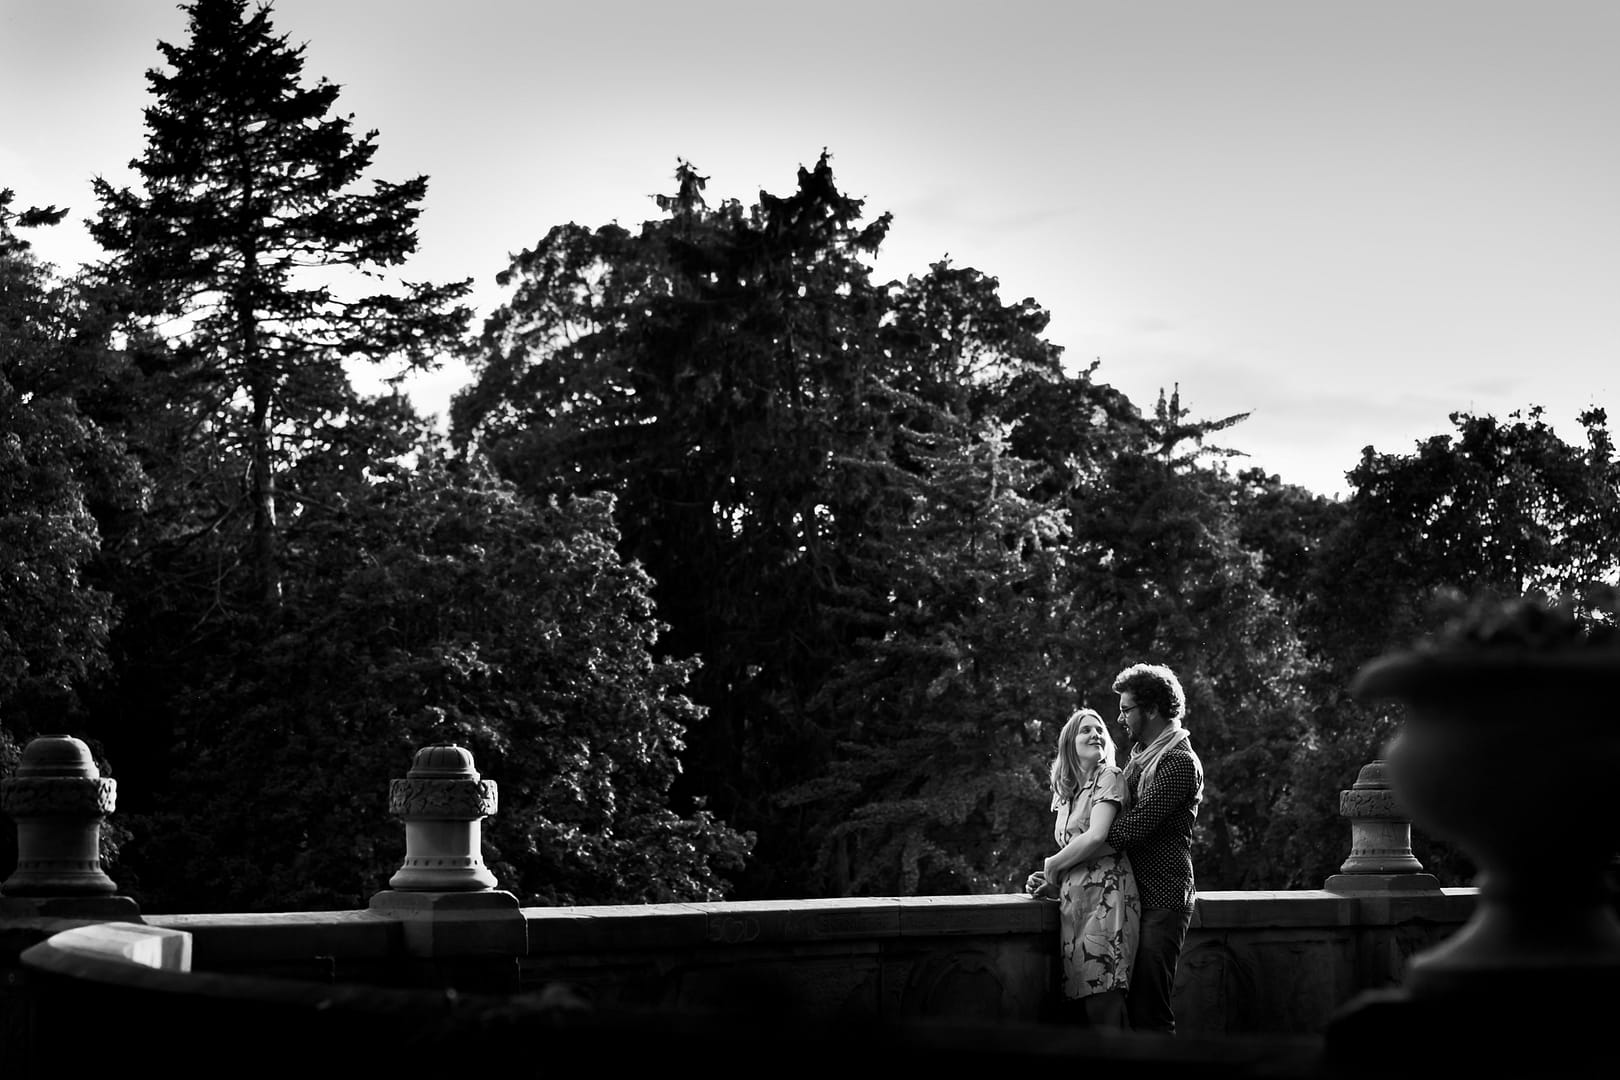 Fotografering inför Bröllopet i Slottsträdgården, Malmö